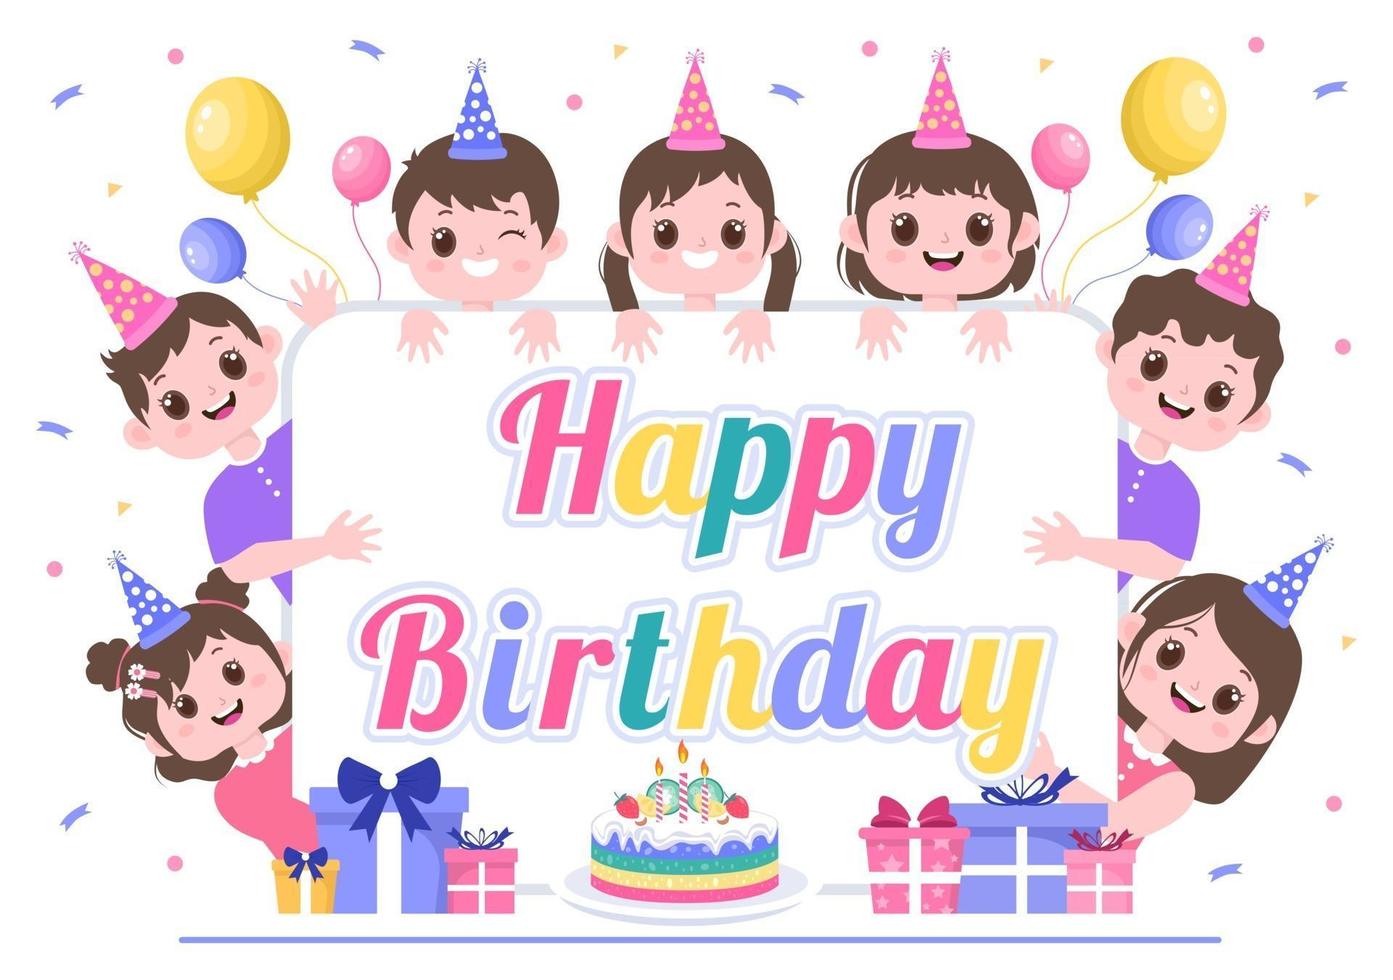 joyeux anniversaire célébrant l'illustration avec des ballons, des chapeaux, des confettis, des cadeaux et des gâteaux vecteur